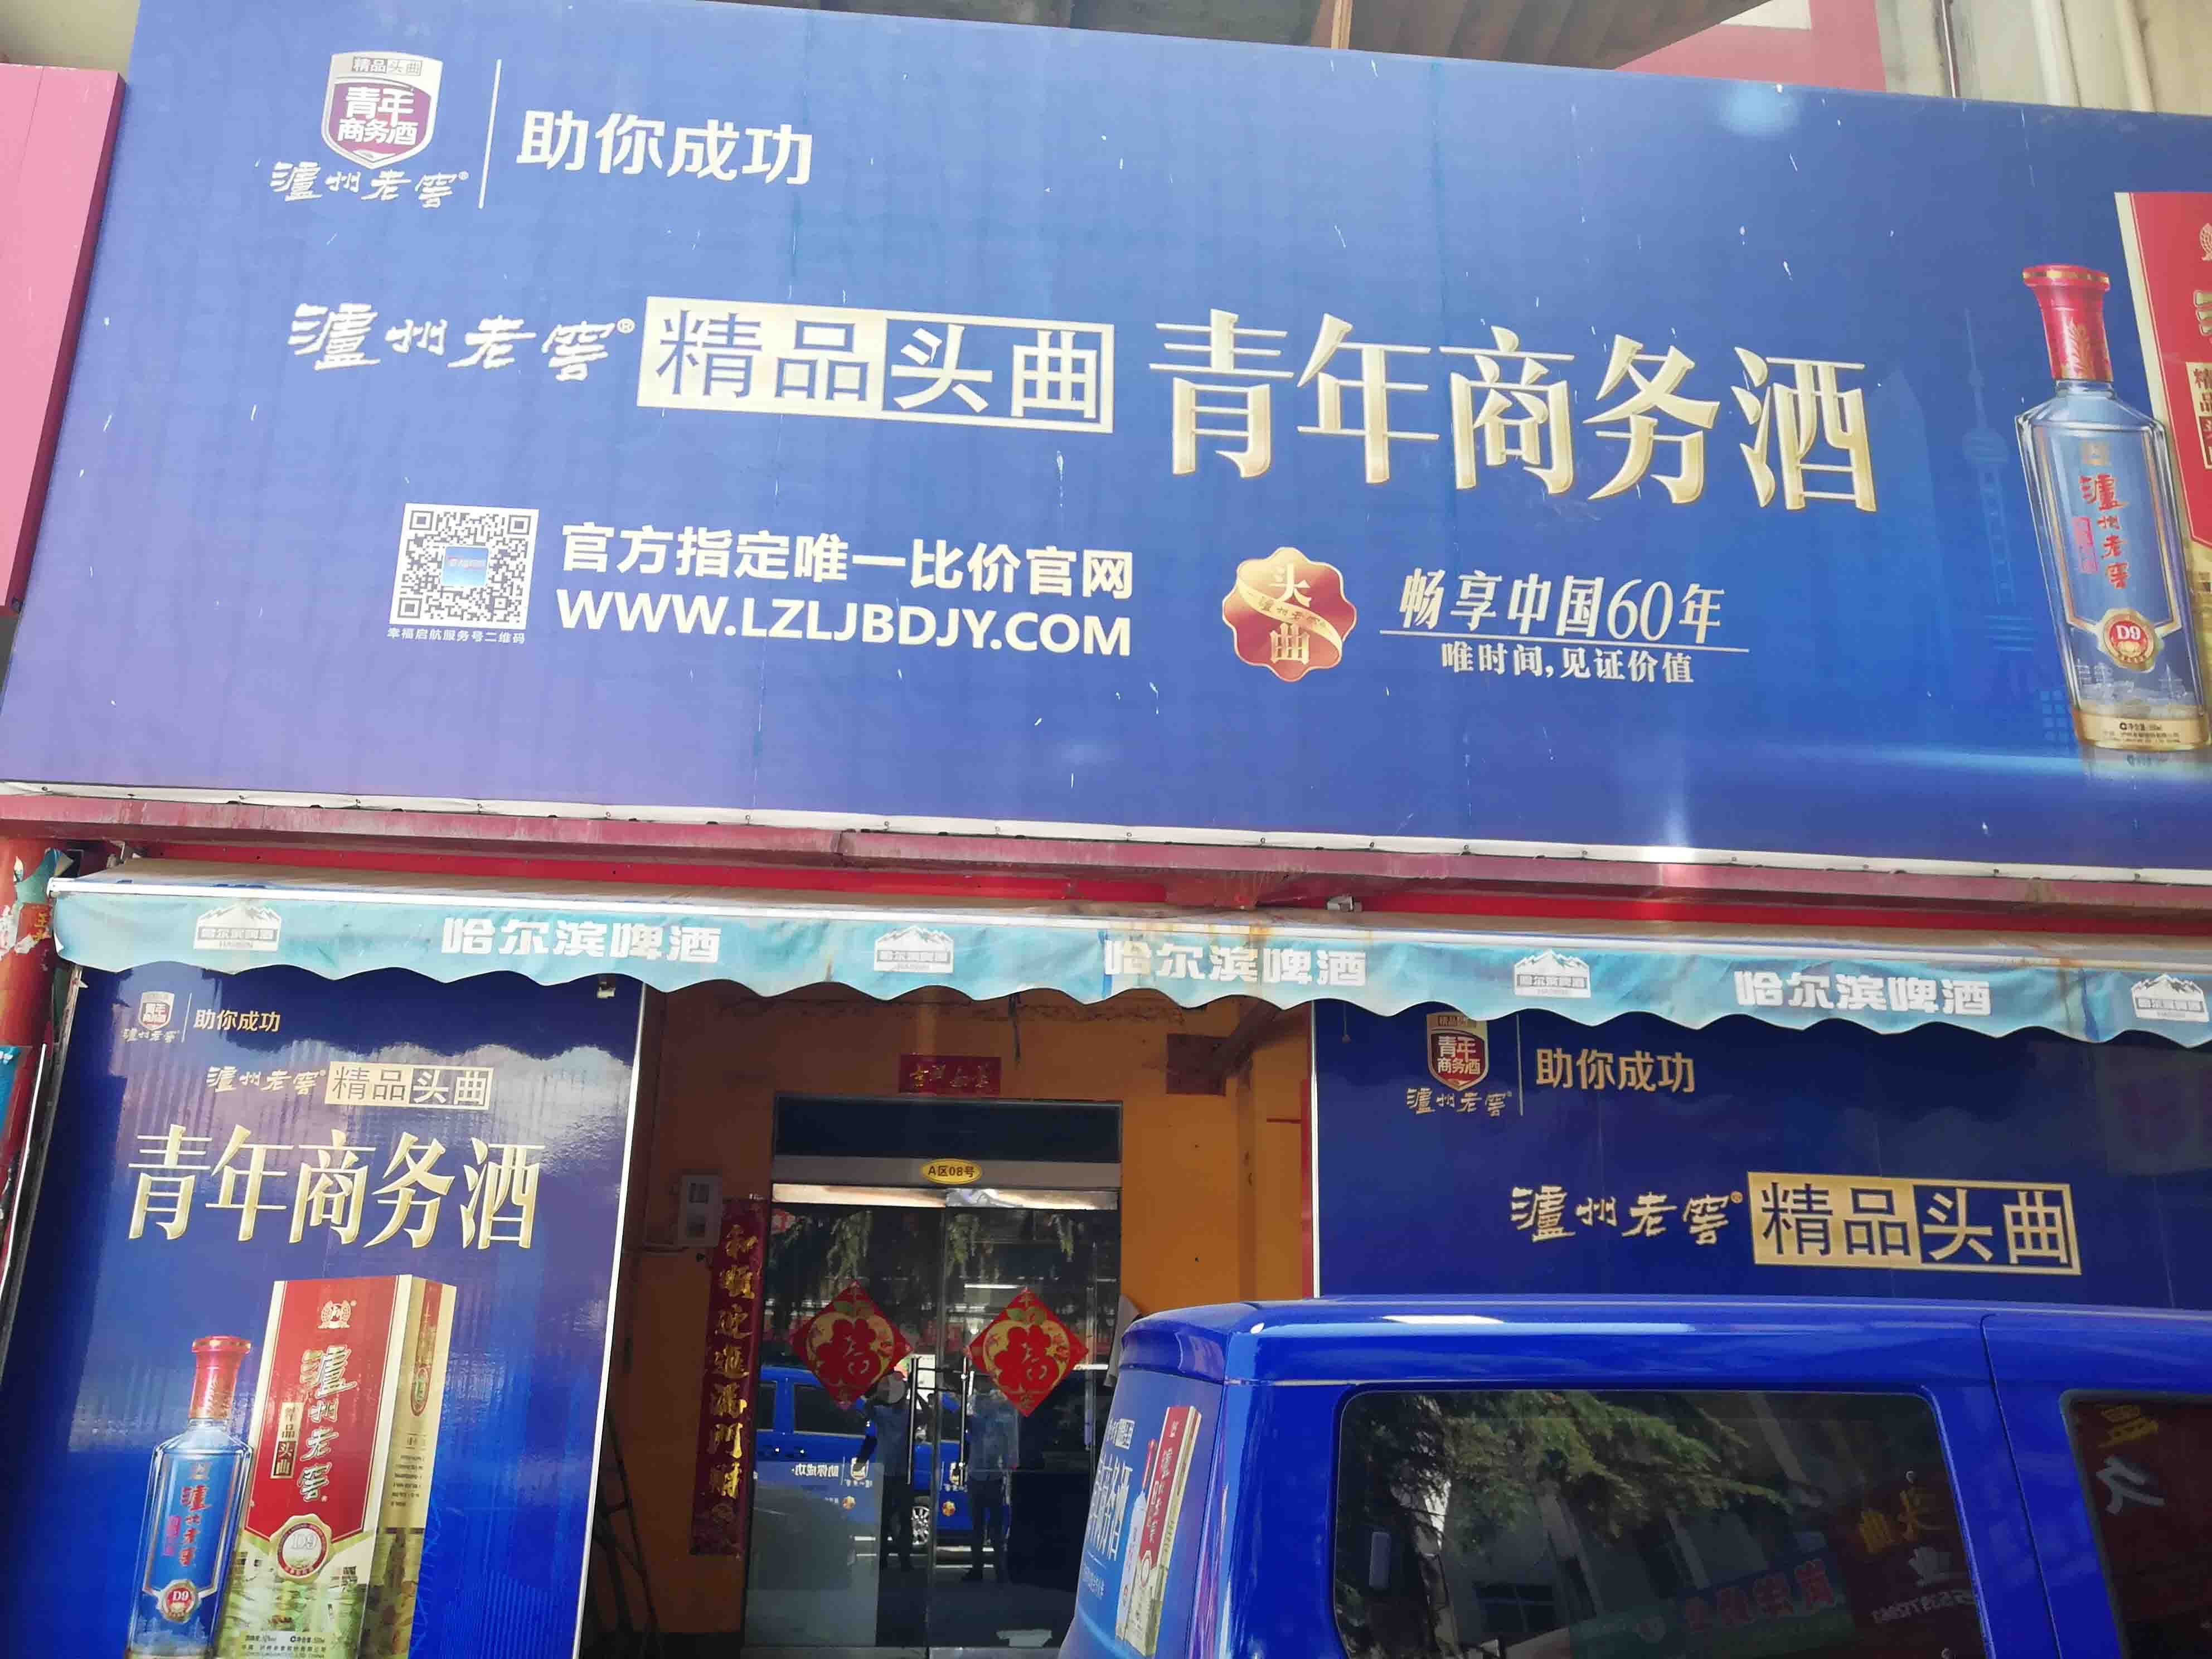 广州路经济型写字楼在洛阳出租，旨在为预算有限的企业提供实惠的选择。我们的列表包含多种价格合理的高端办公空间